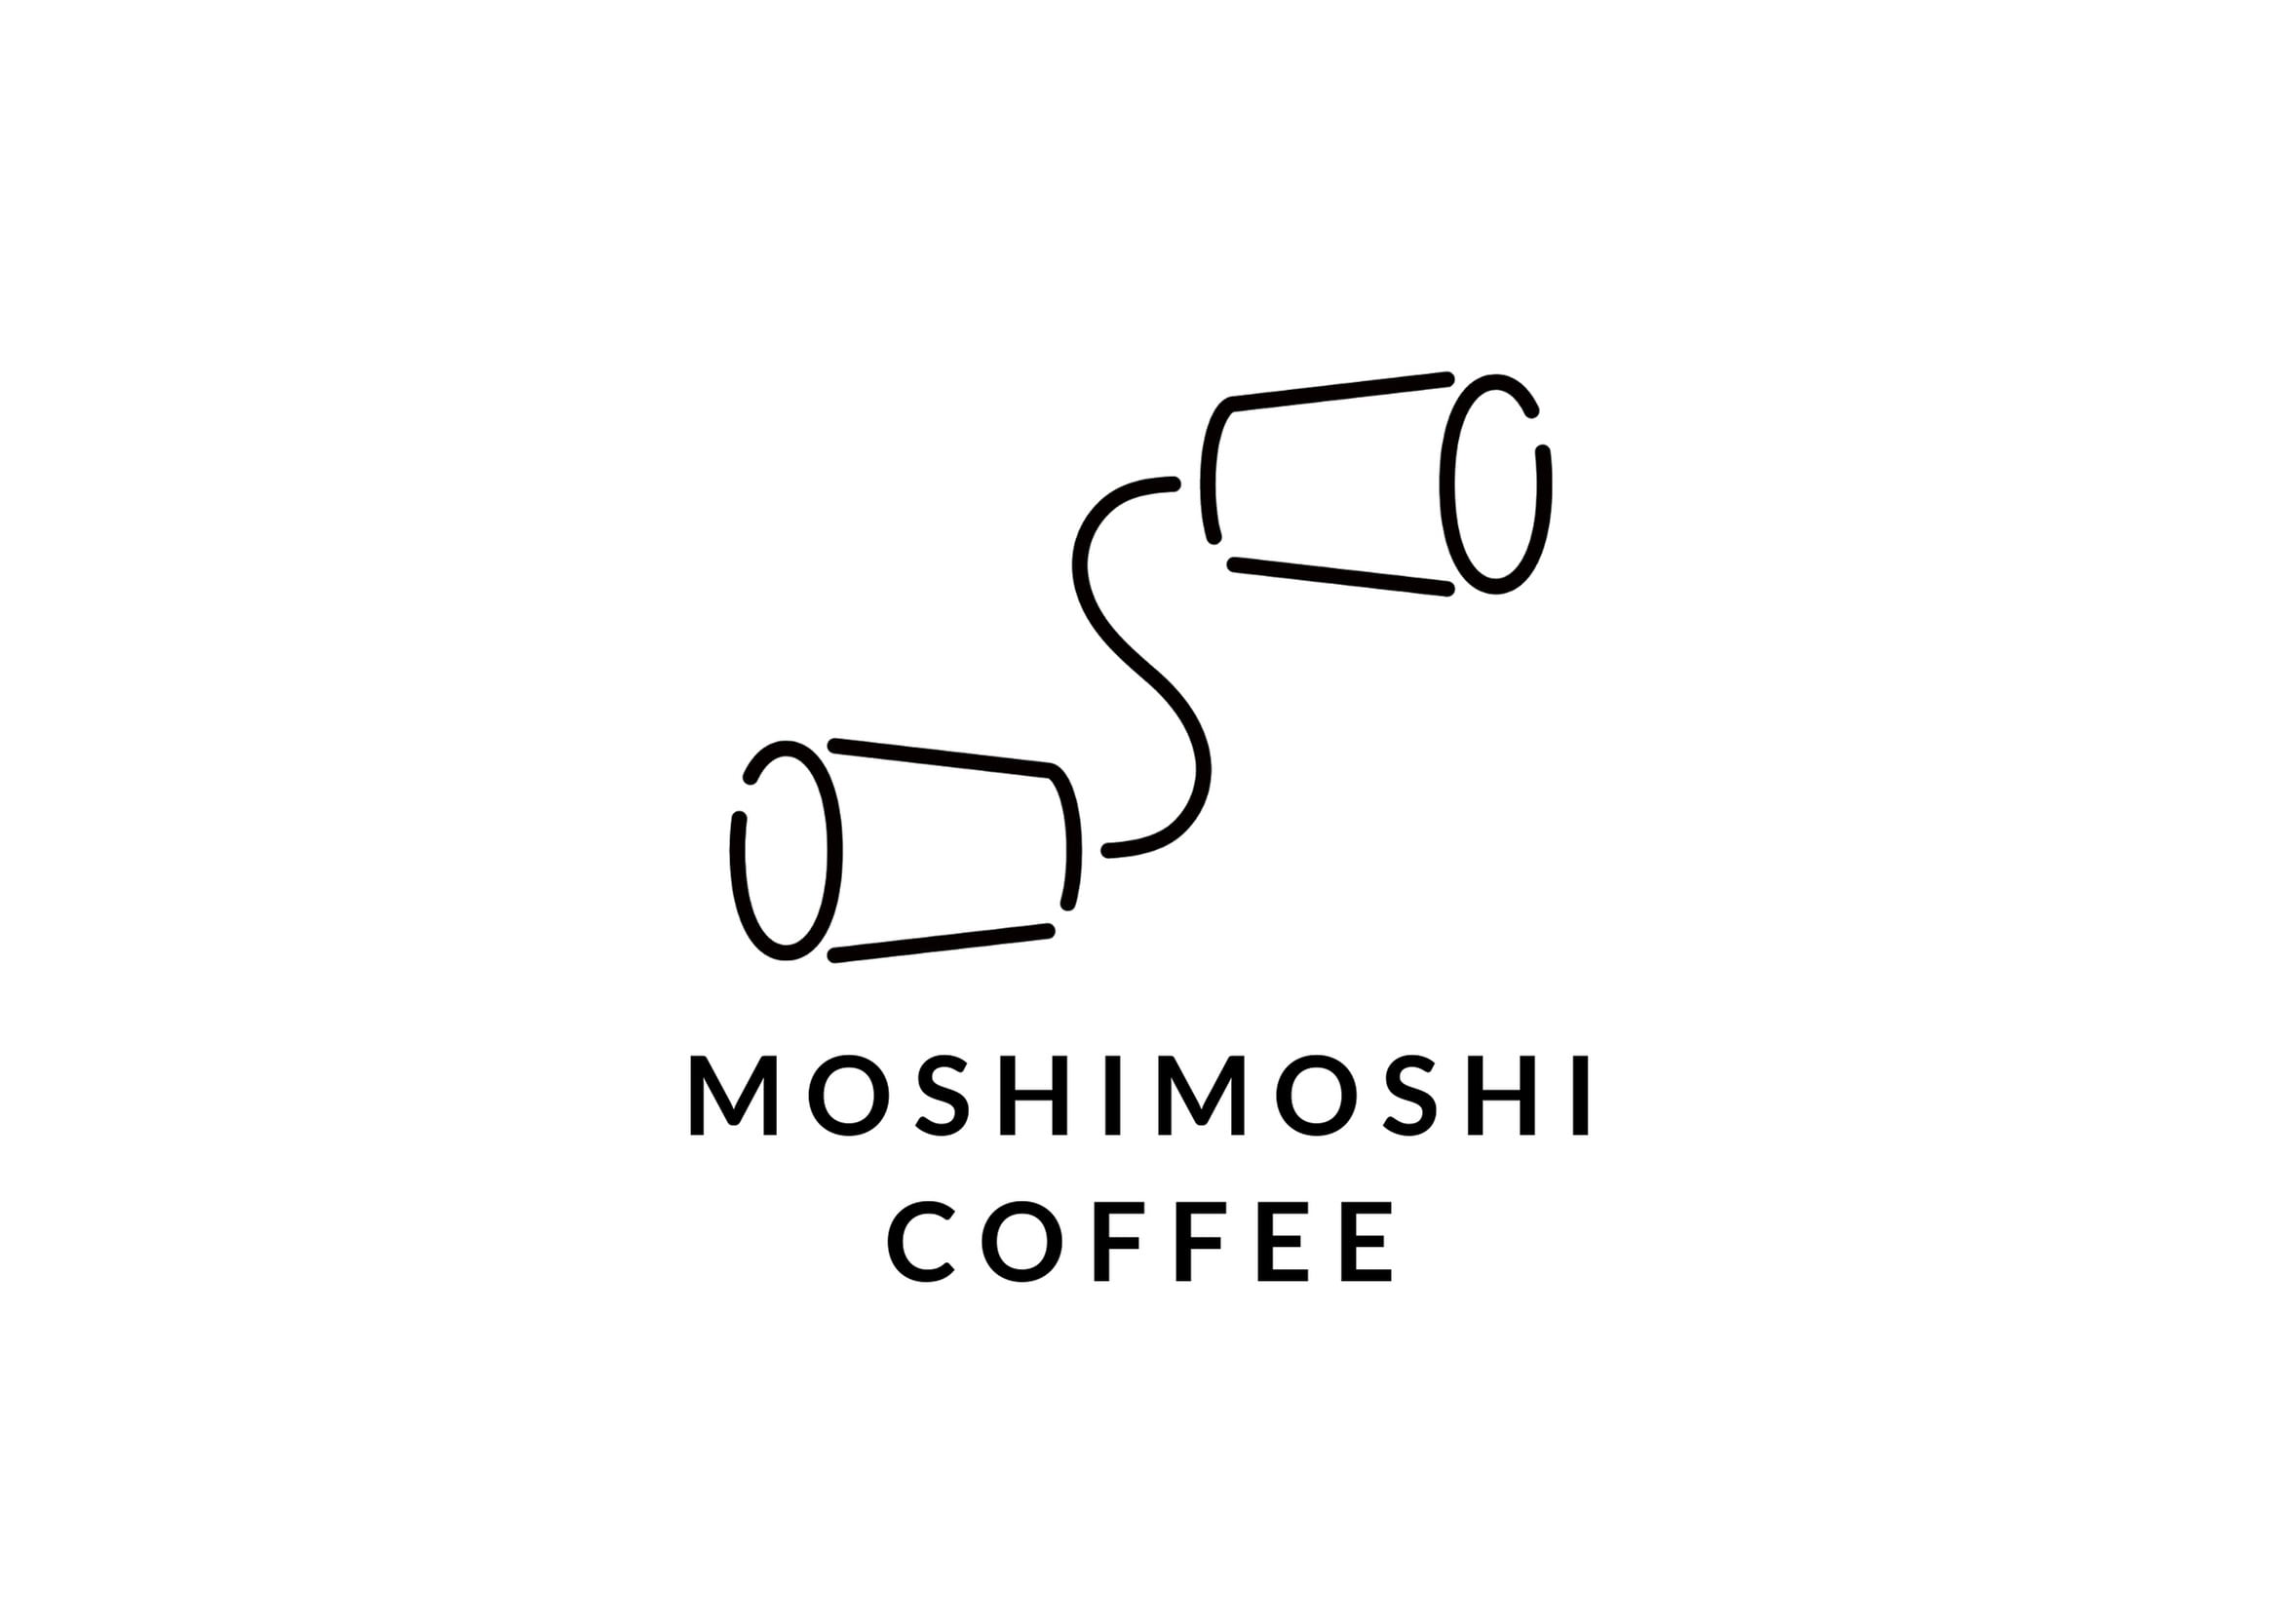 MOSHIMOSHI COFFEE